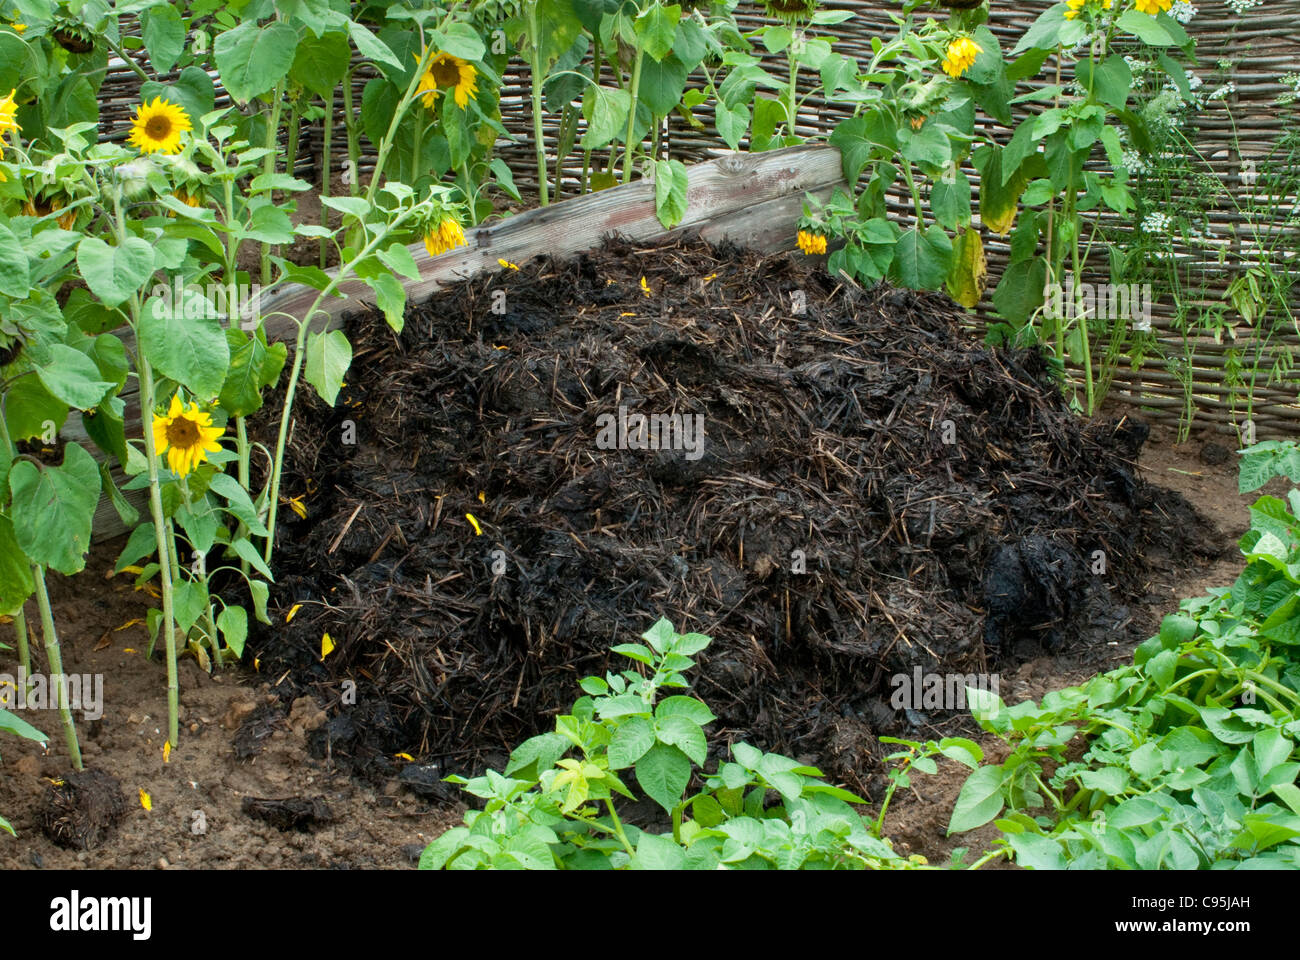 Kompostierte Misthaufen + Kartoffel Pflanzen Gemüse & Sonnenblumen Boden Nährstoffe gesunde grüne organische Gartenarbeit Blumen wieder aufzufüllen Stockfoto